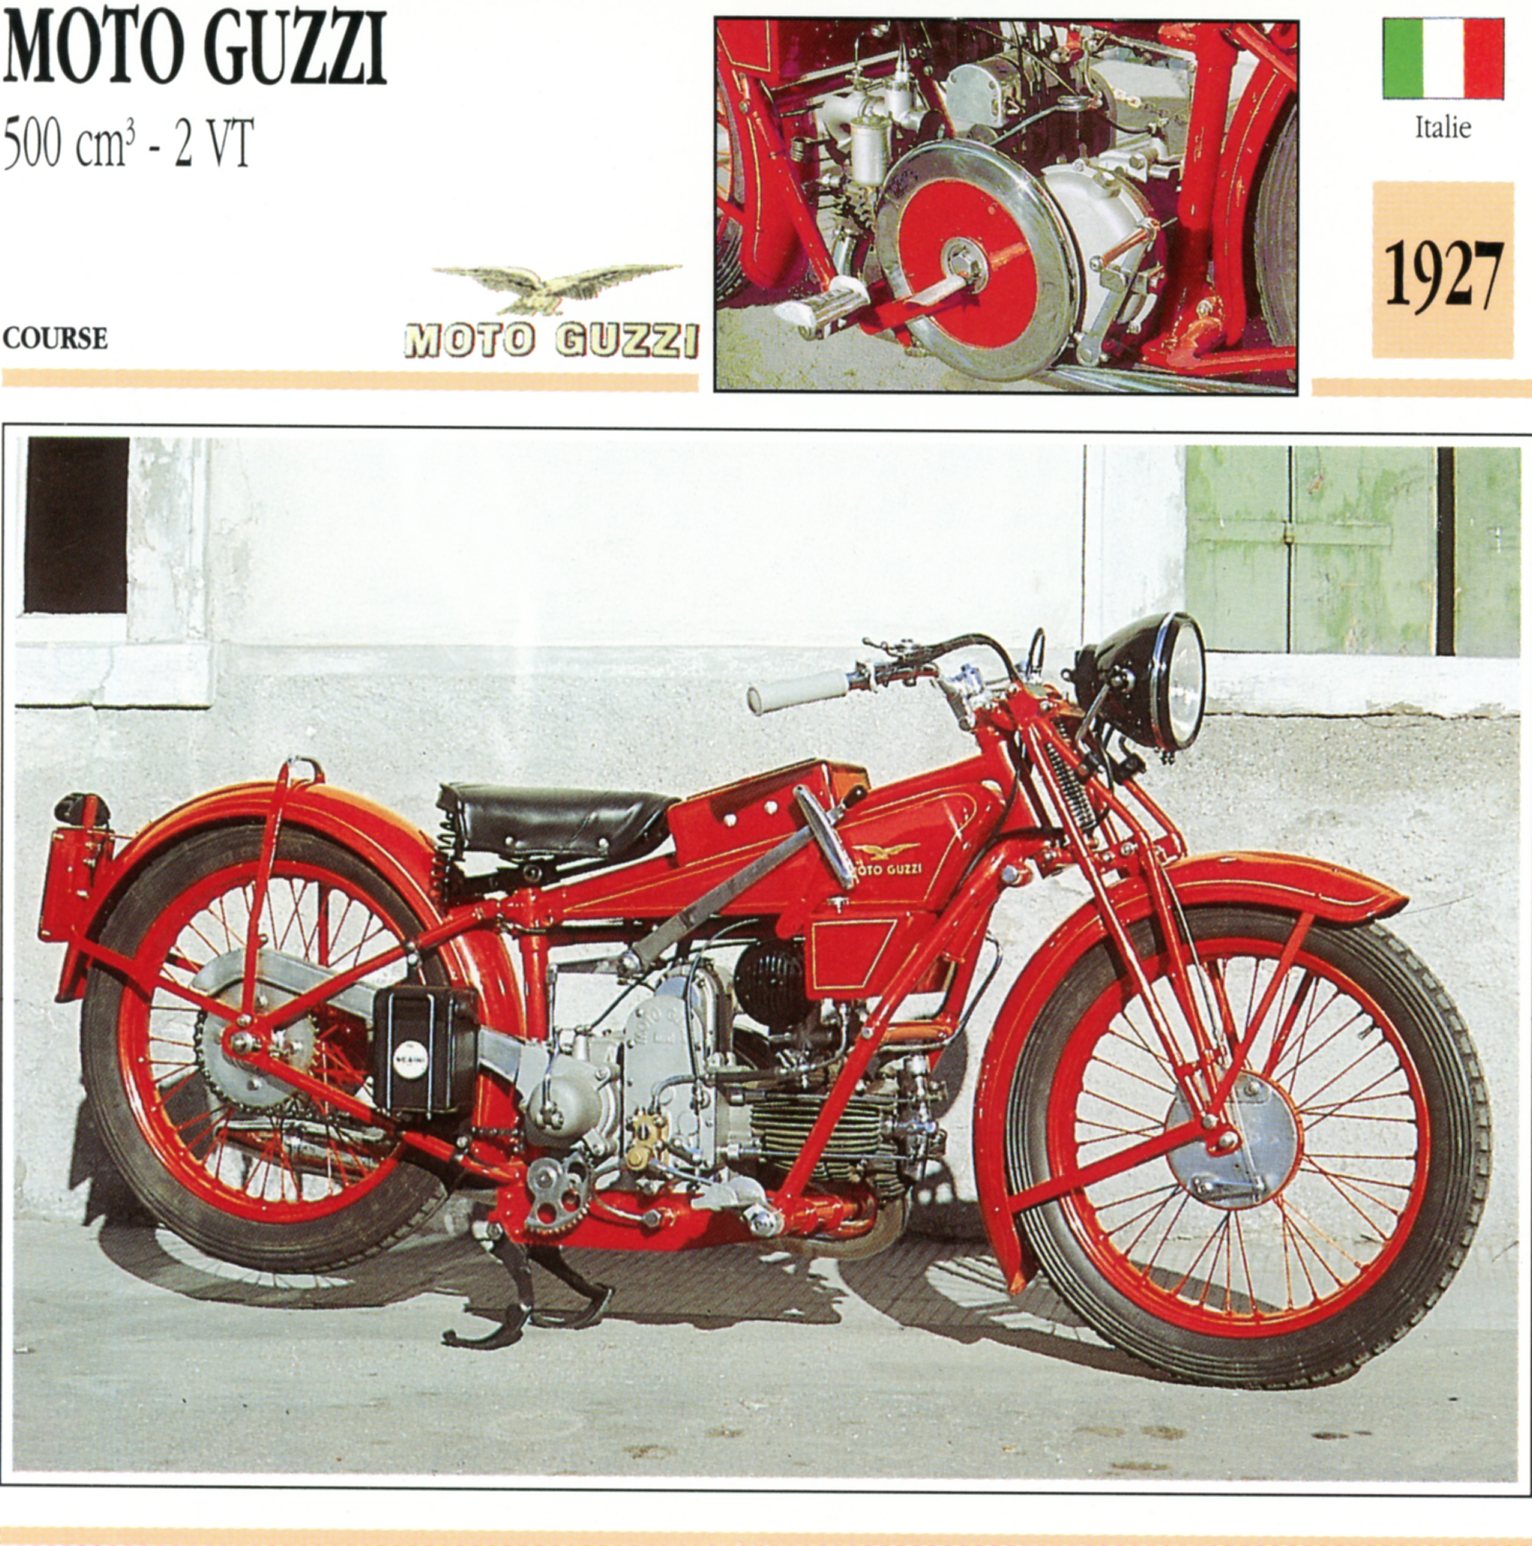 MOTO GUZZI 500 2VT 1927 - CARTE CARD FICHE MOTO CARACTERISTIQUES